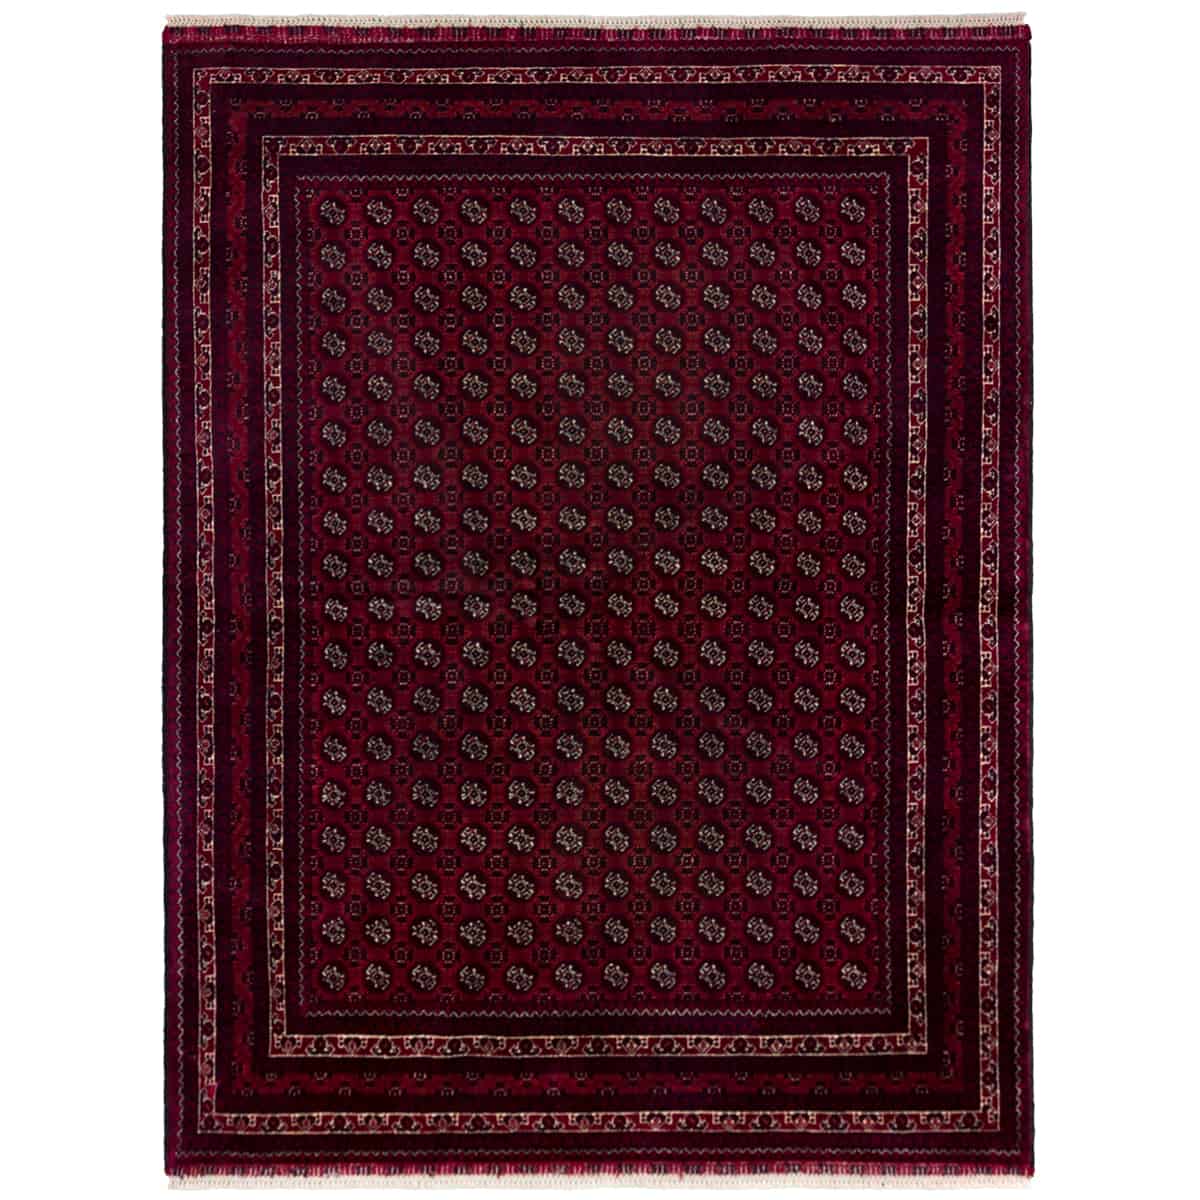  אפגני באשיר 00 אדום 150x194 | השטיח האדום 